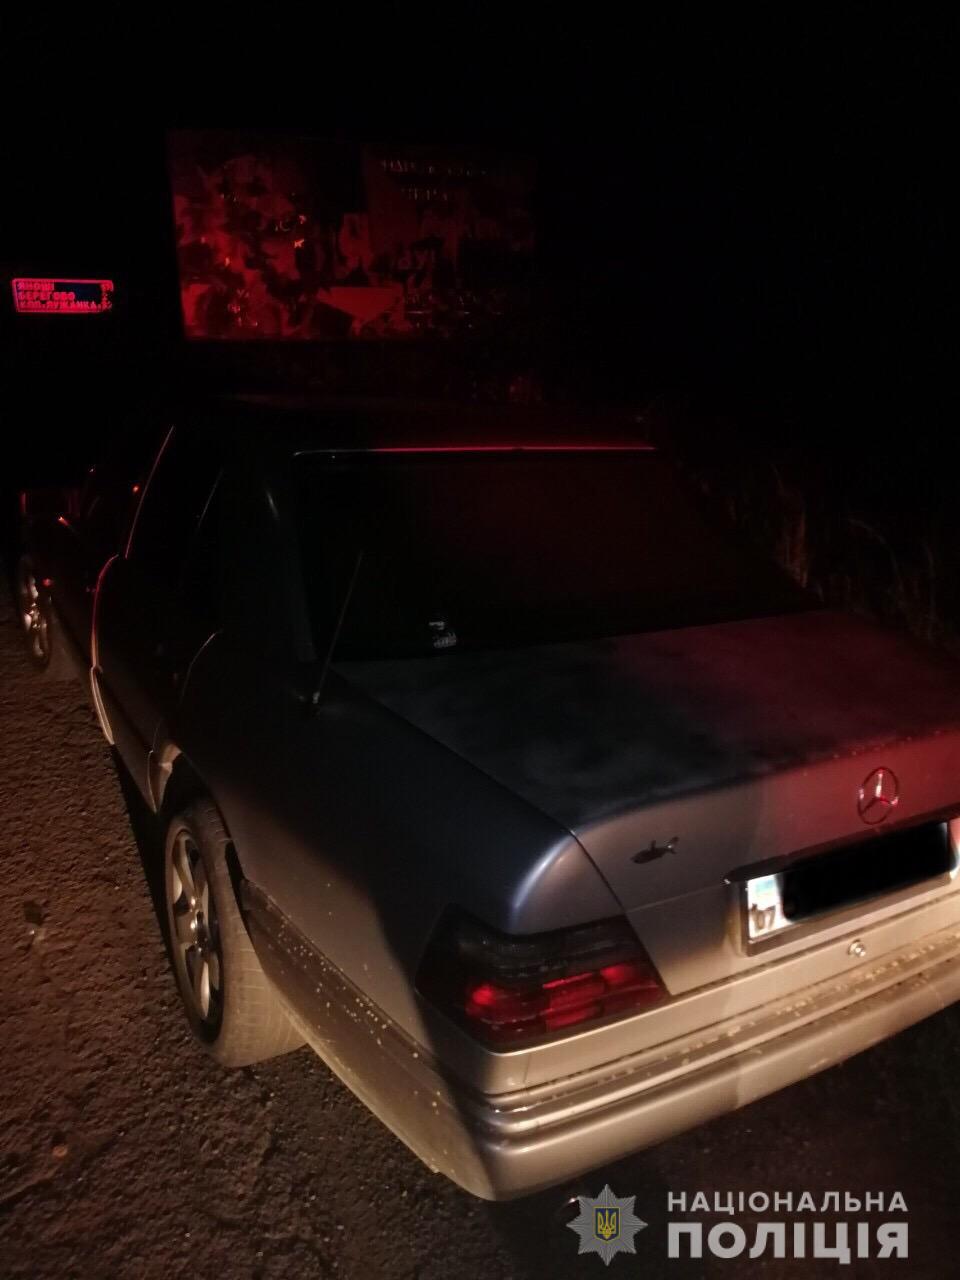 З автозаправної станції в с.Павшино Мукачівського району викрали автомобіль марки «Mercedes-Benz». Поліцейські оперативно  розшукали транспортний засіб та затримали викрадача.